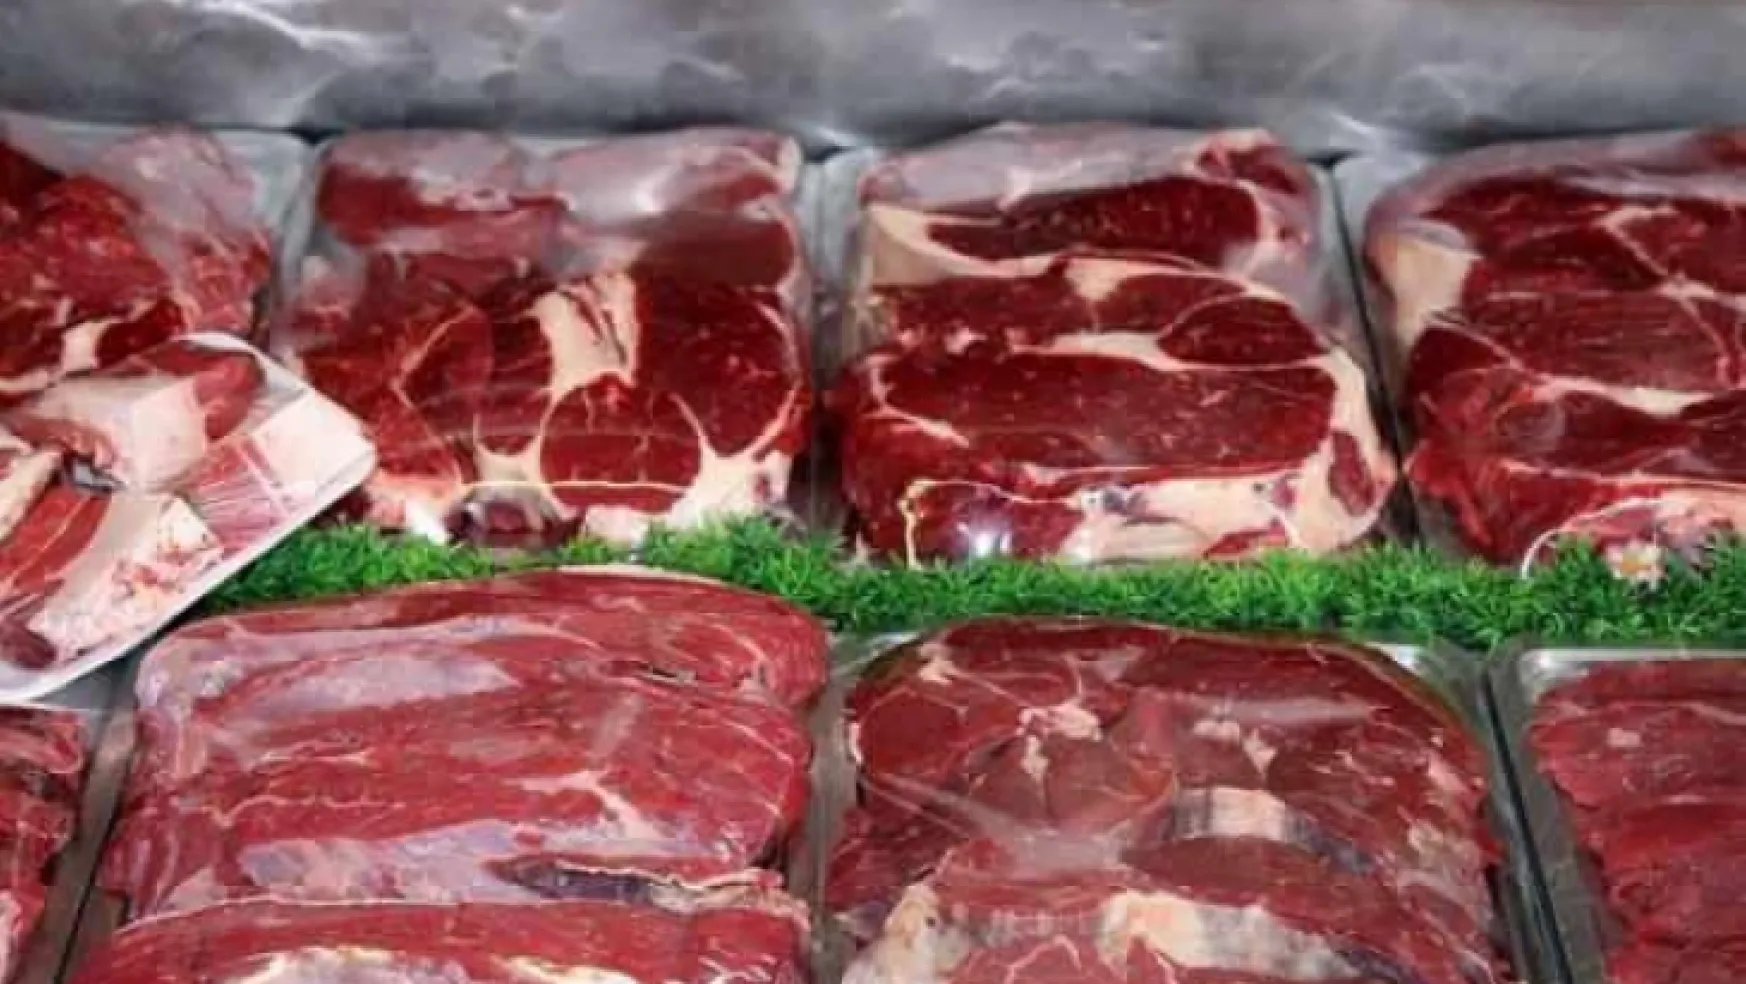 Dünyada et fiyatları 32 yılın zirvesinde